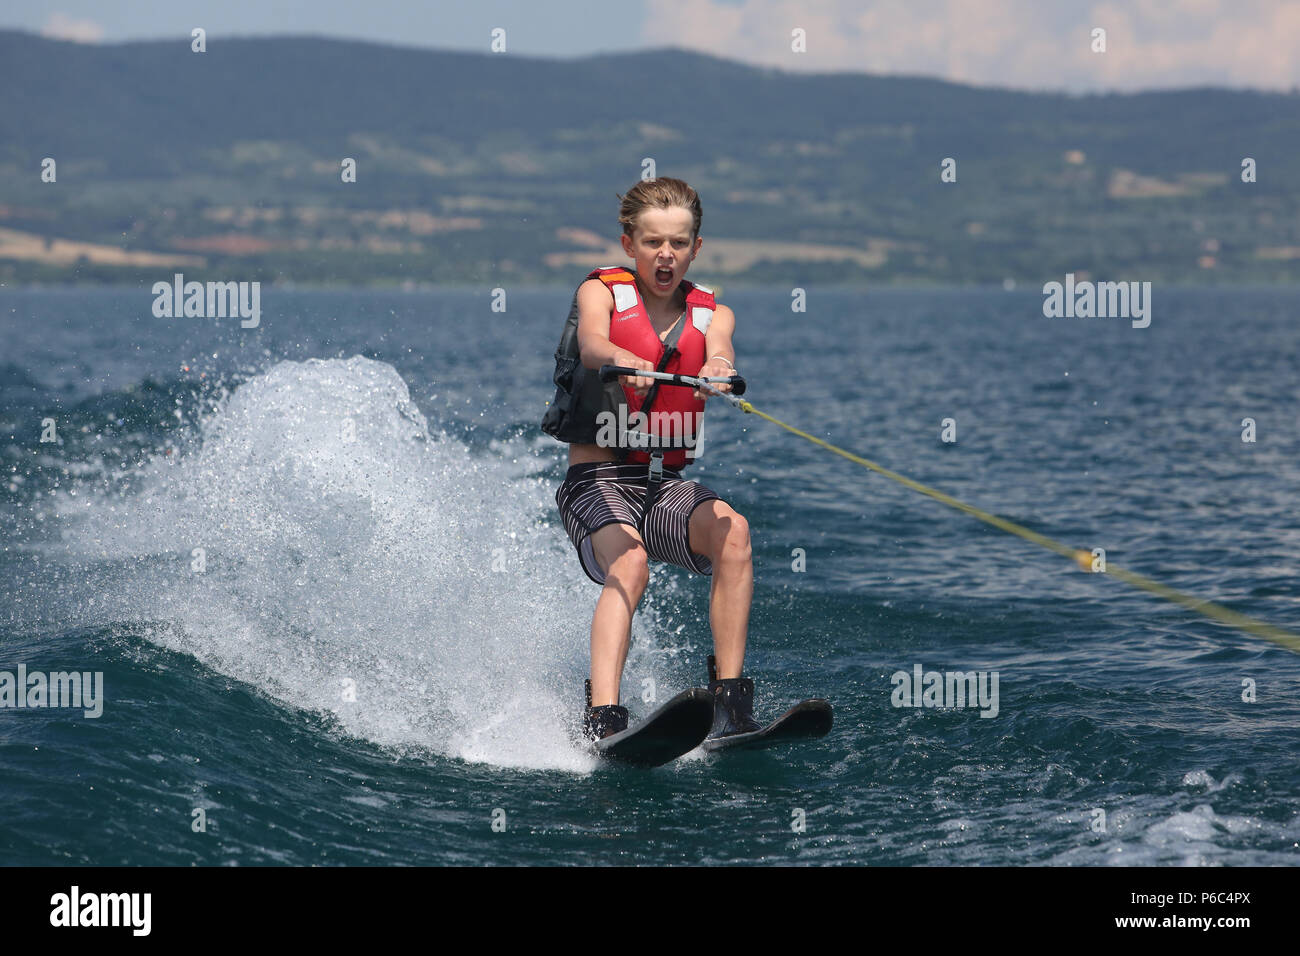 Capodimonte, Italy, boy is water skiing on Lake Bolsena Stock Photo